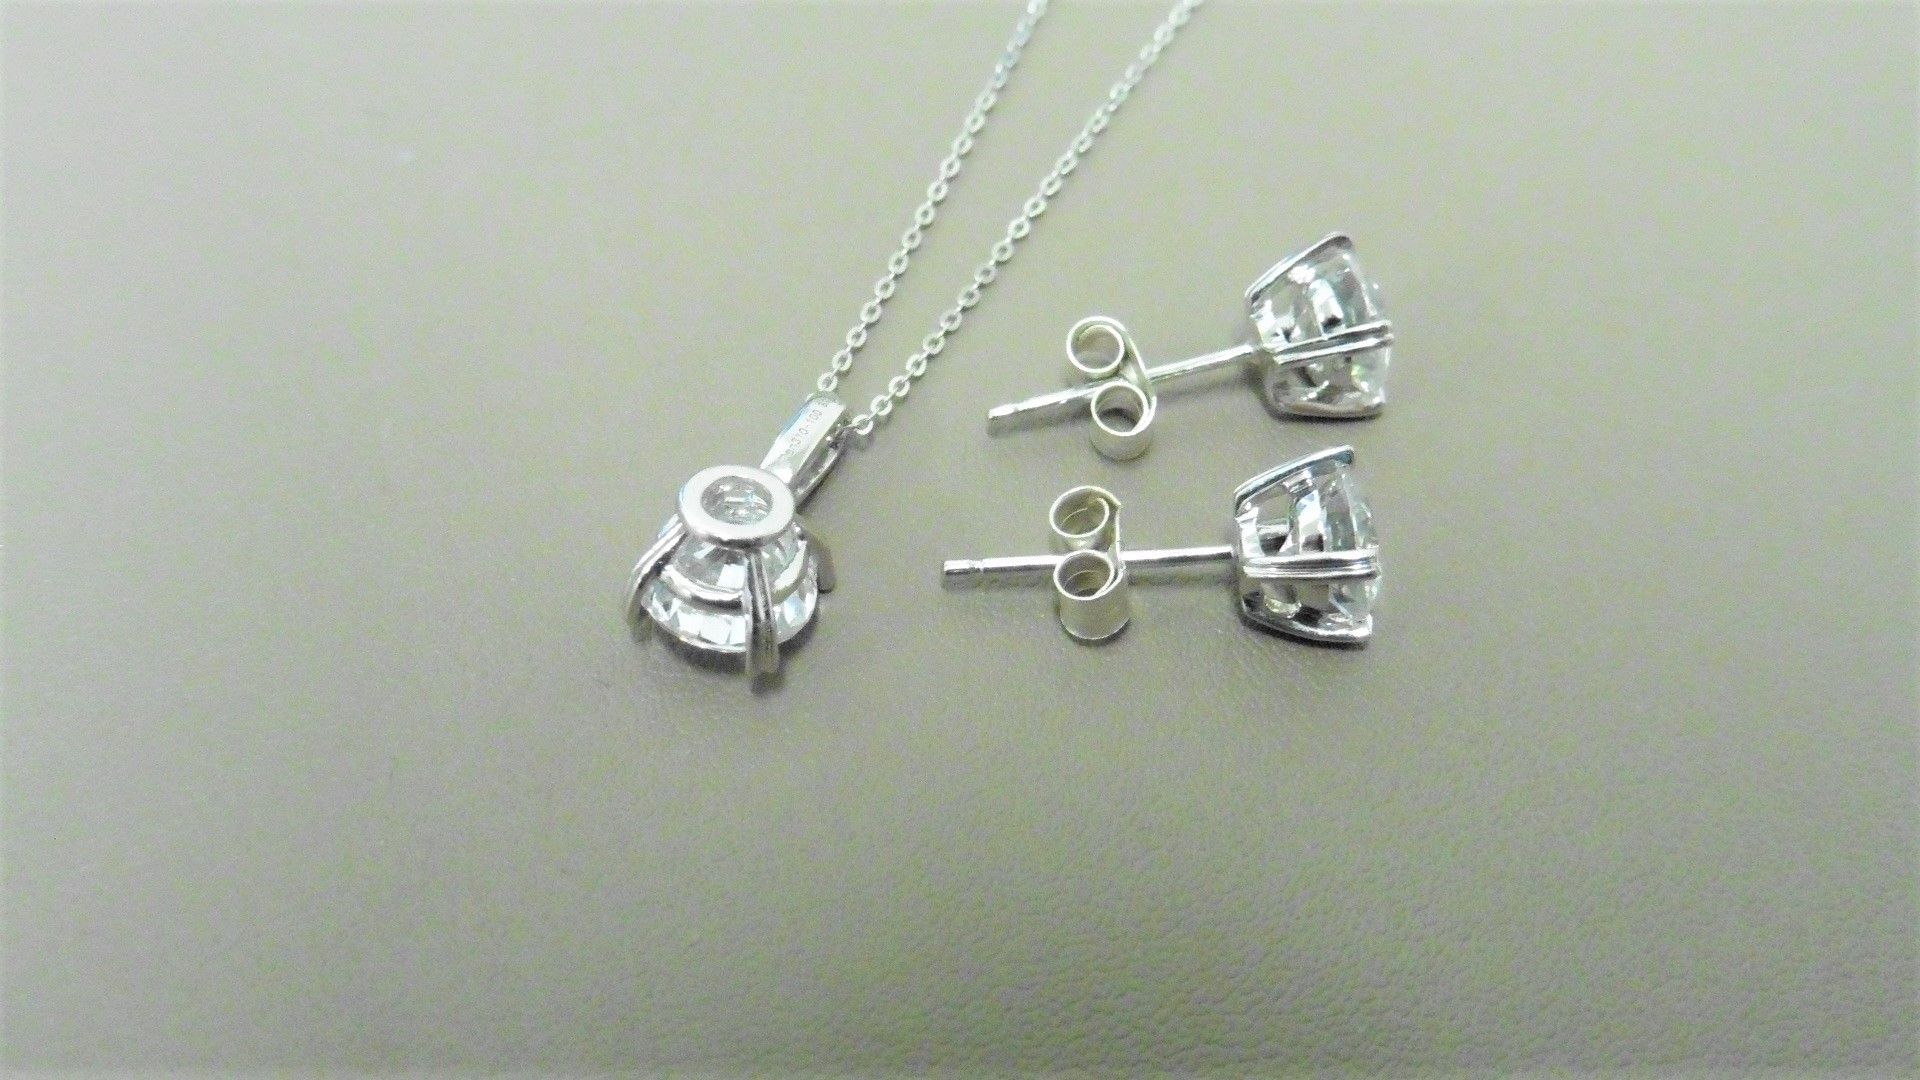 0.30ct / 0.50ct diamond pendant and earring set in platinum. Pendant - 0.30ct brilliant cut diamond, - Image 2 of 2